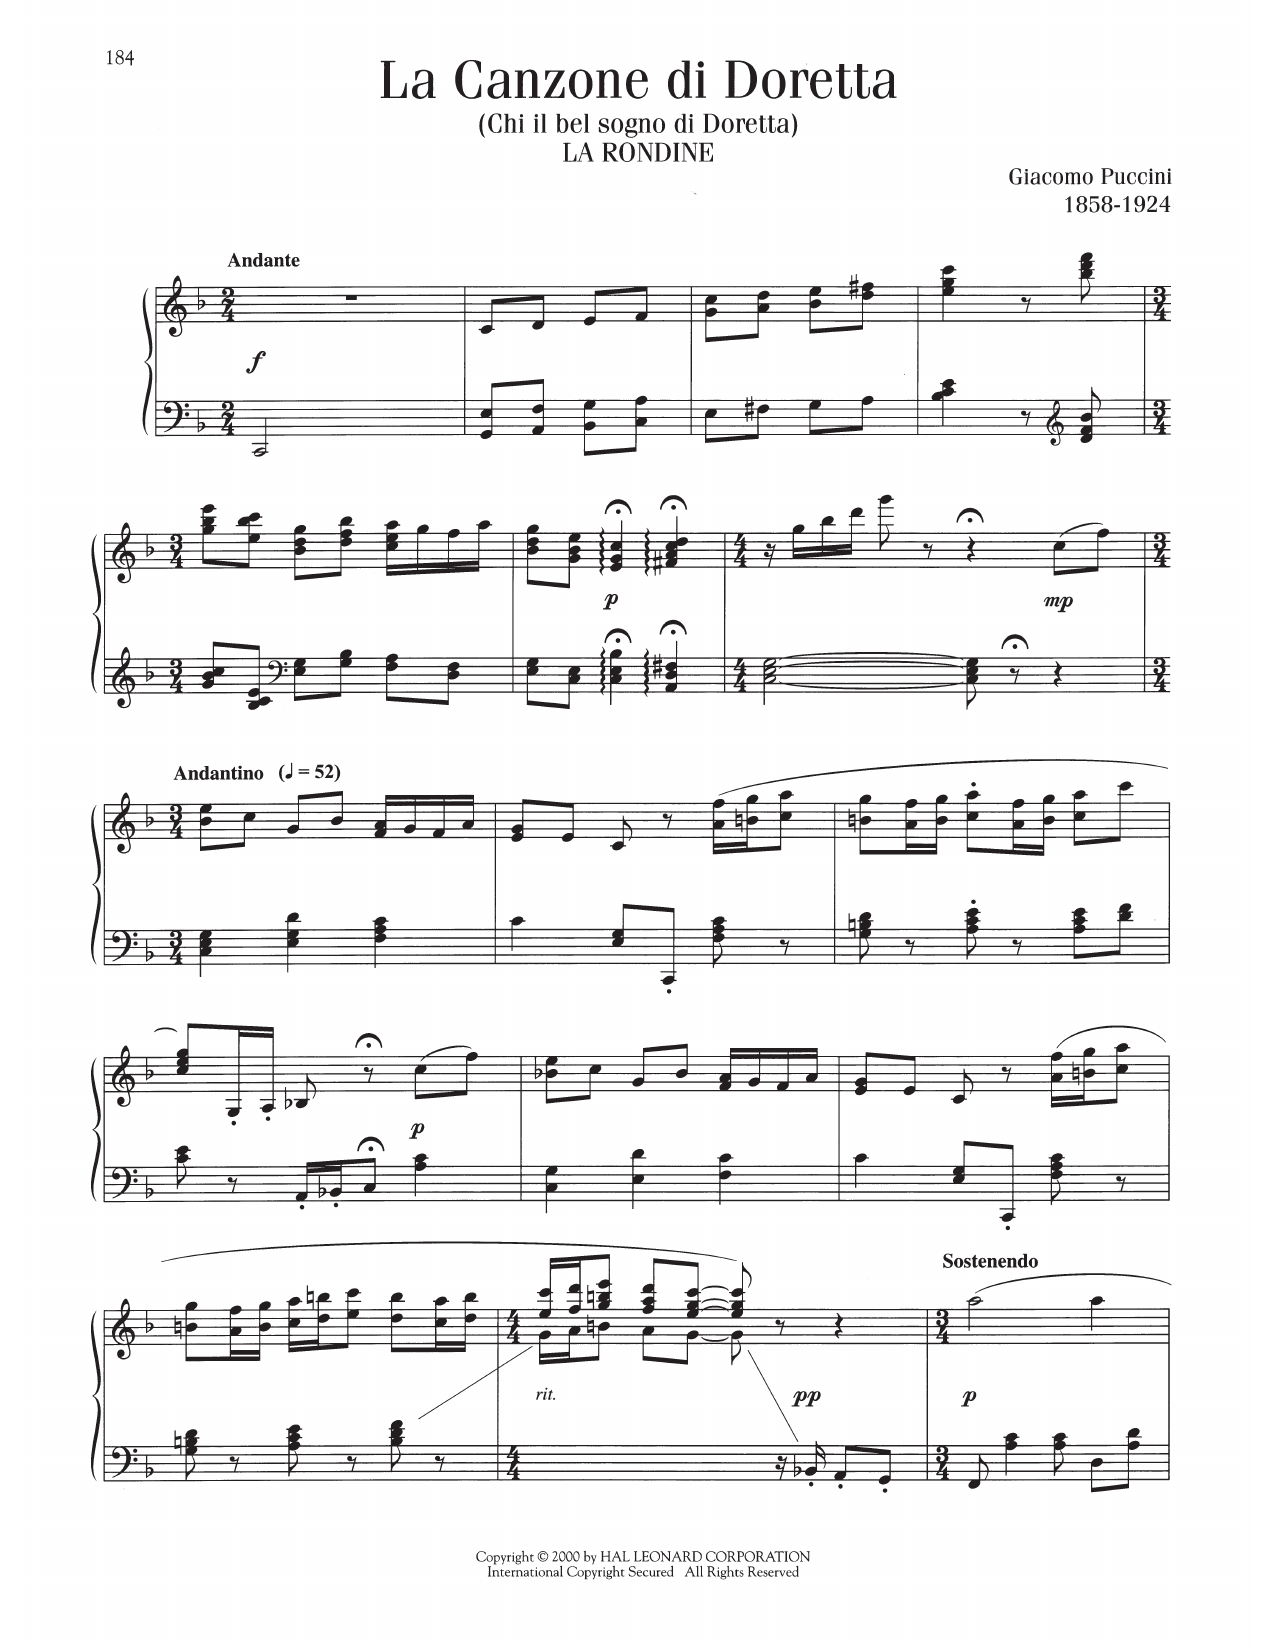 Giacomo Puccini Canzone di Doretta sheet music notes printable PDF score